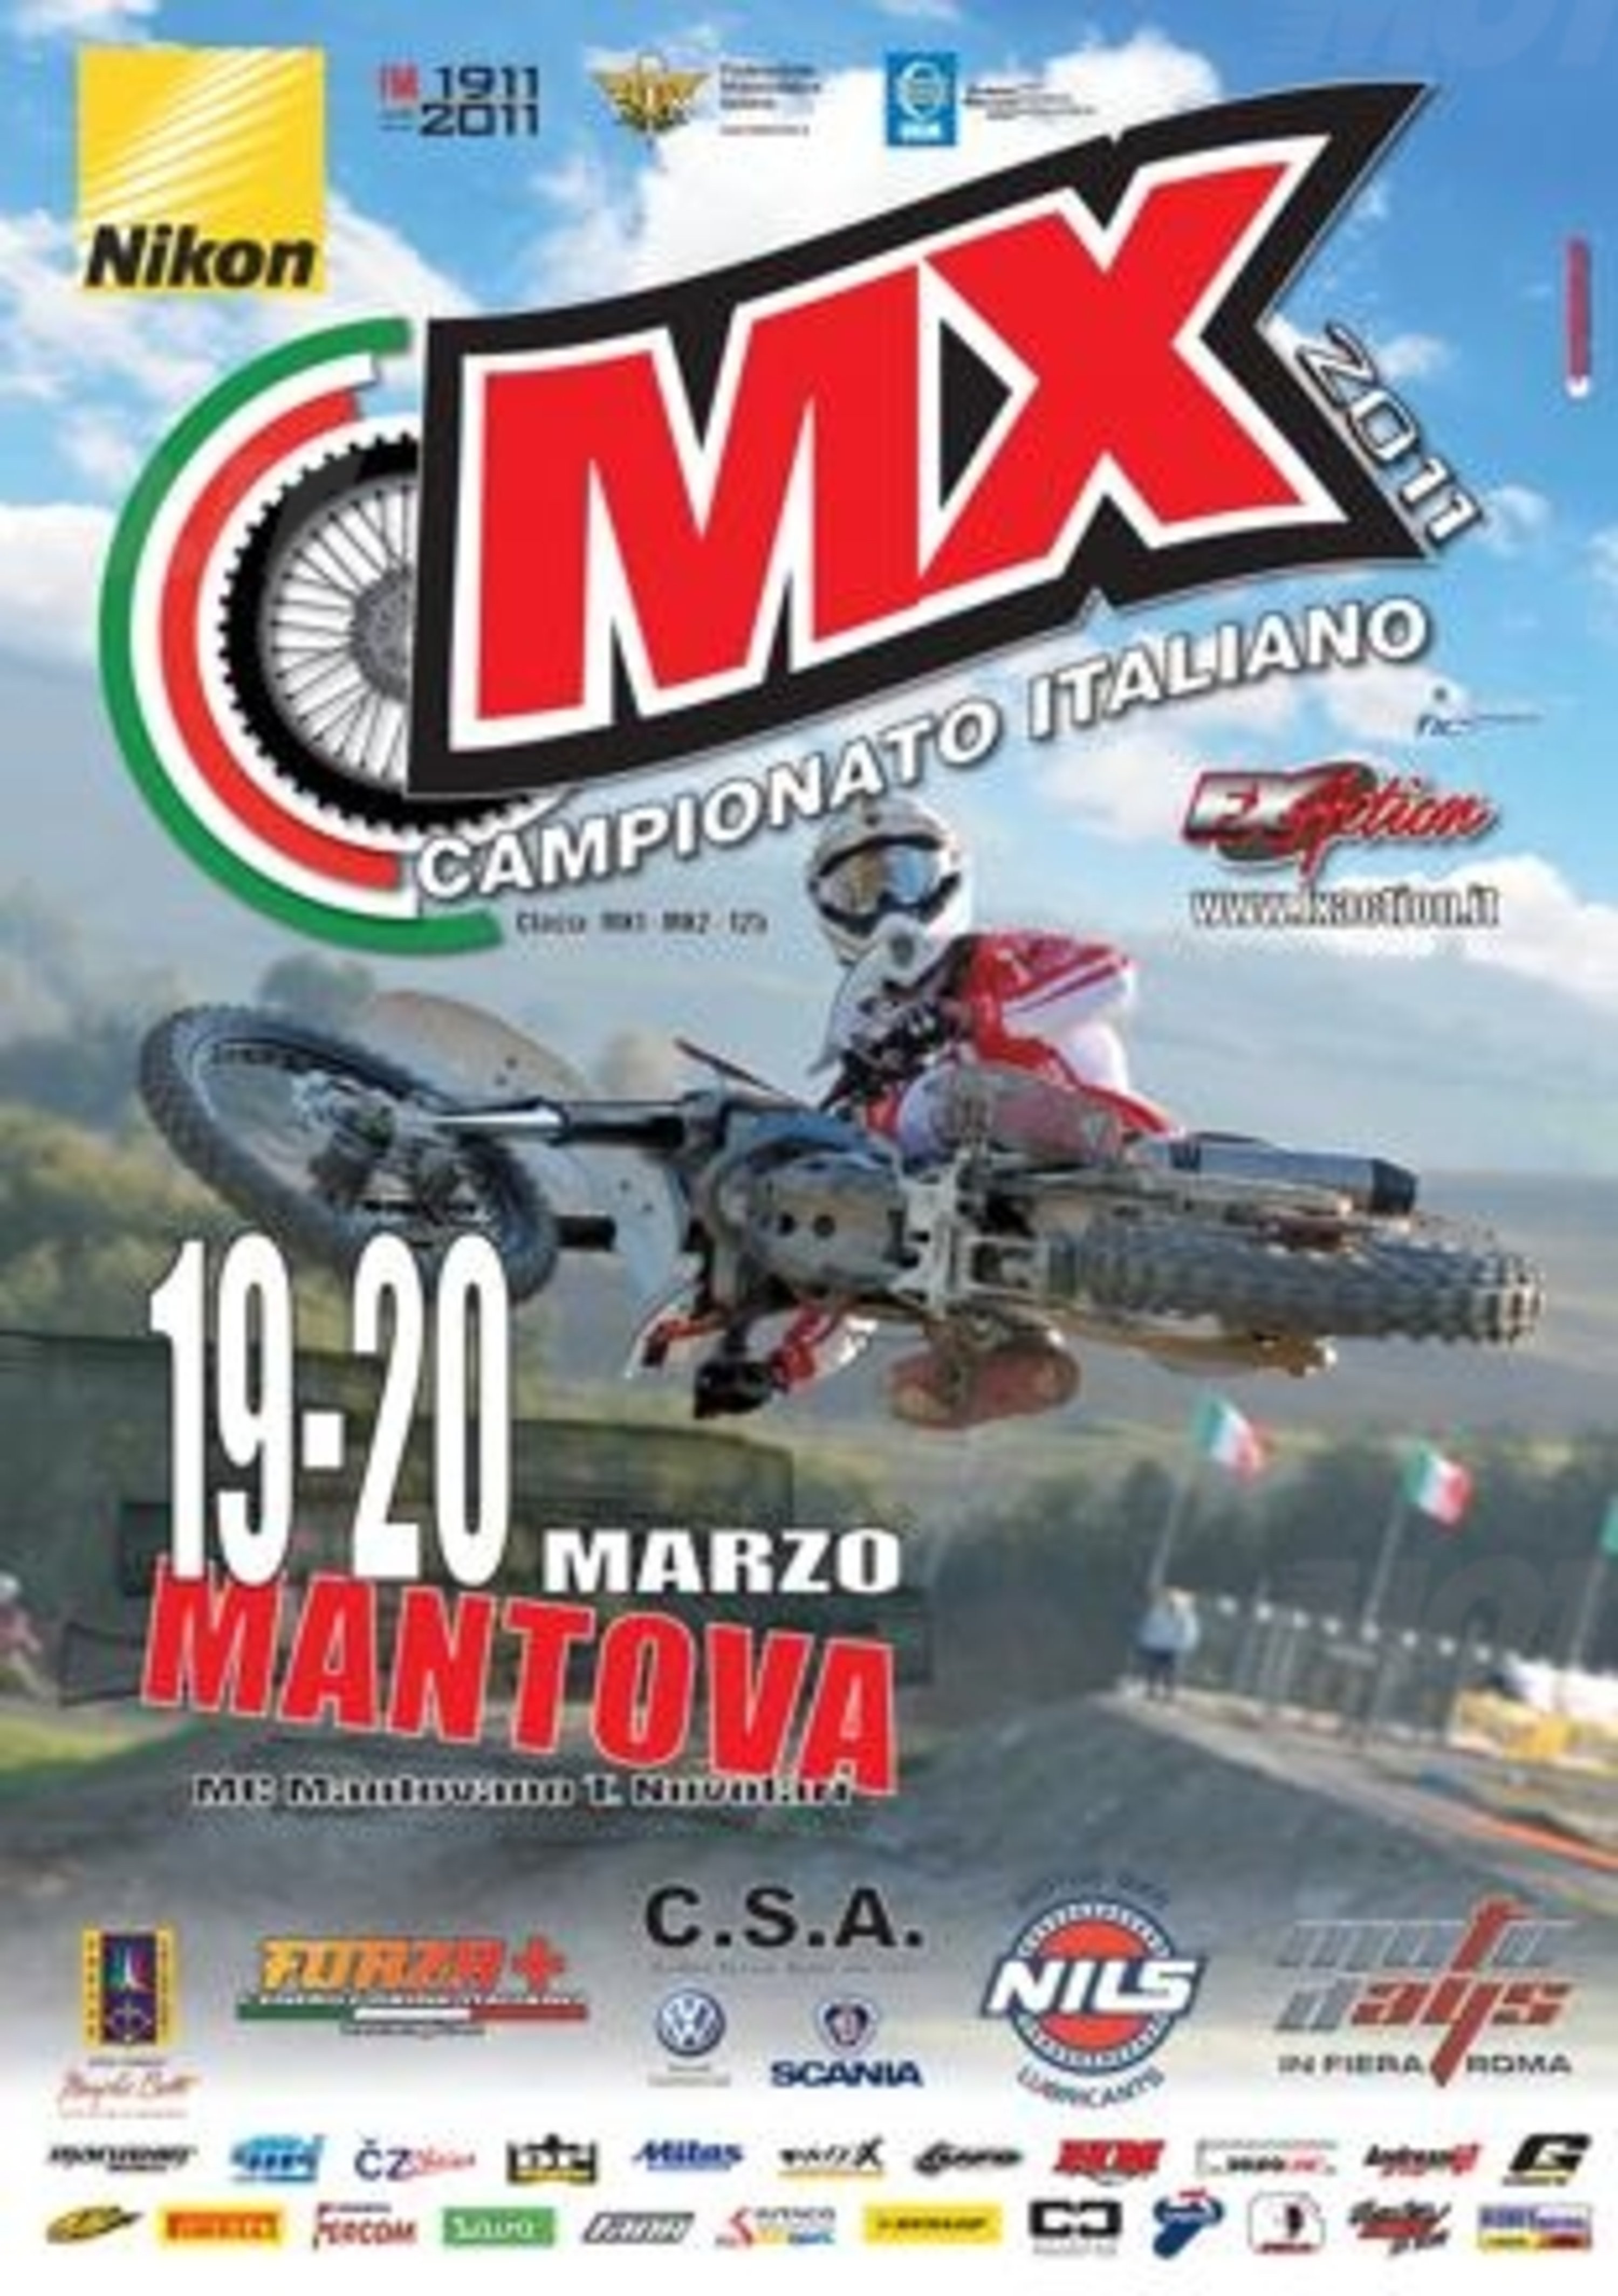 Al via il Campionato Italiano Motocross 2011